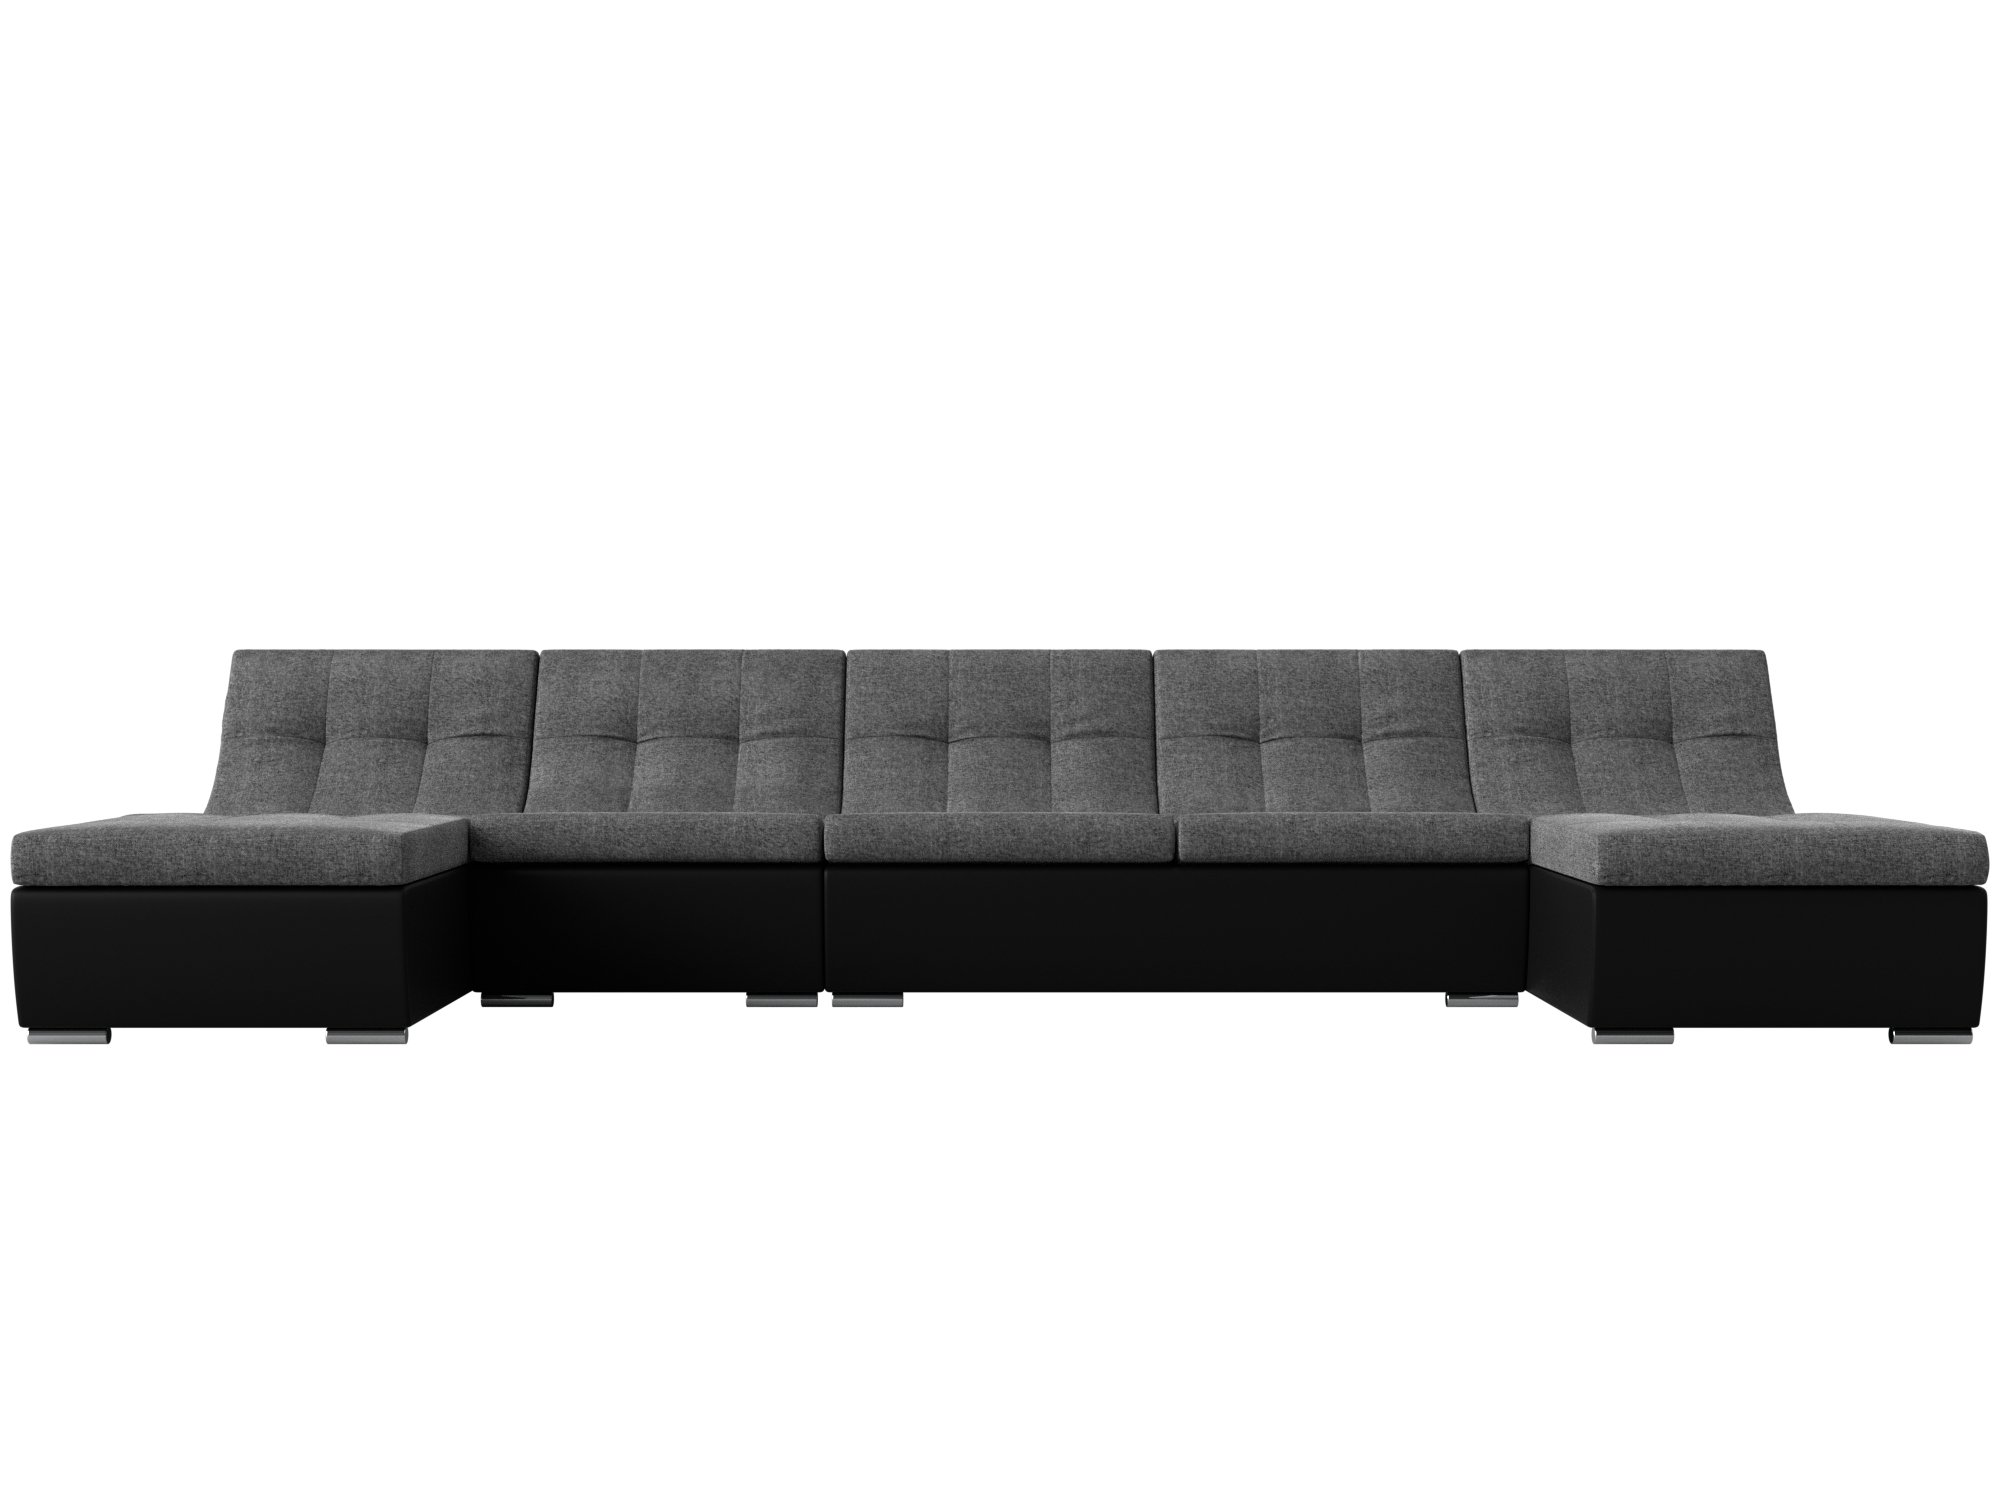 П-образный модульный диван Монреаль Long MebelVia Серый, Черный, Рогожка, Экокожа, ЛДСП диван артмебель валенсия рогожка серый п образный